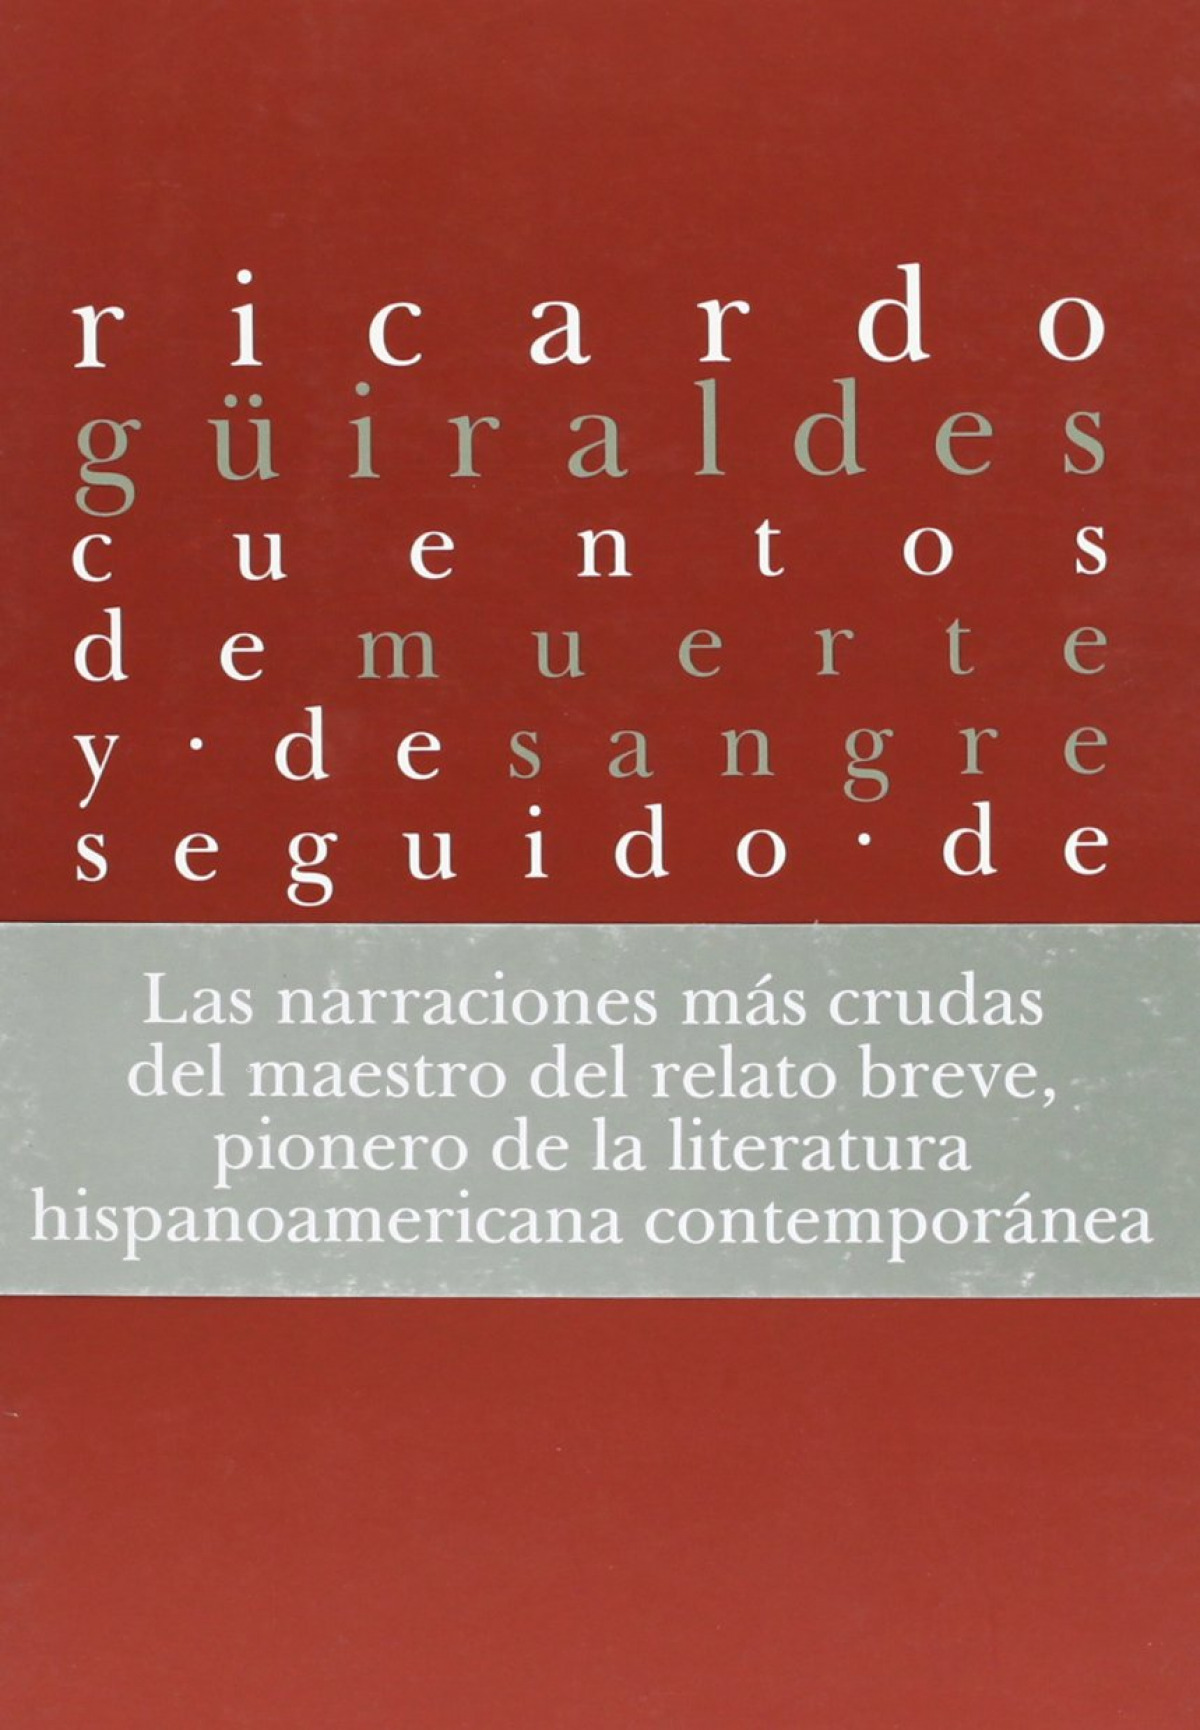 Cuentos de muerte y de sangre - Guiraldes,Ricardo